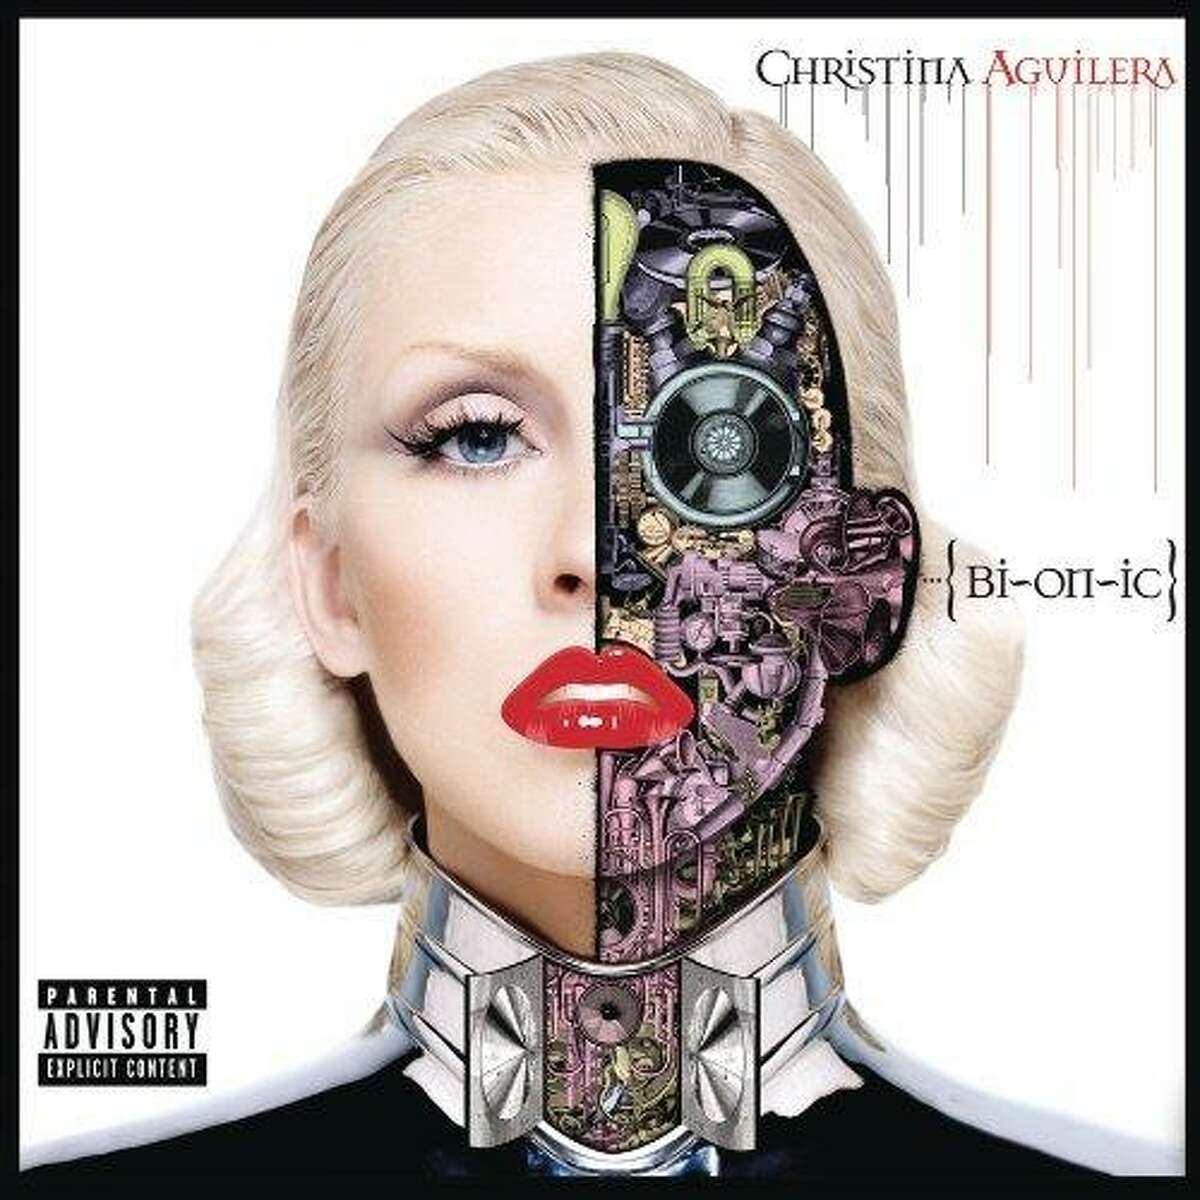 Christina Aguilera CD cover: "Bionic"